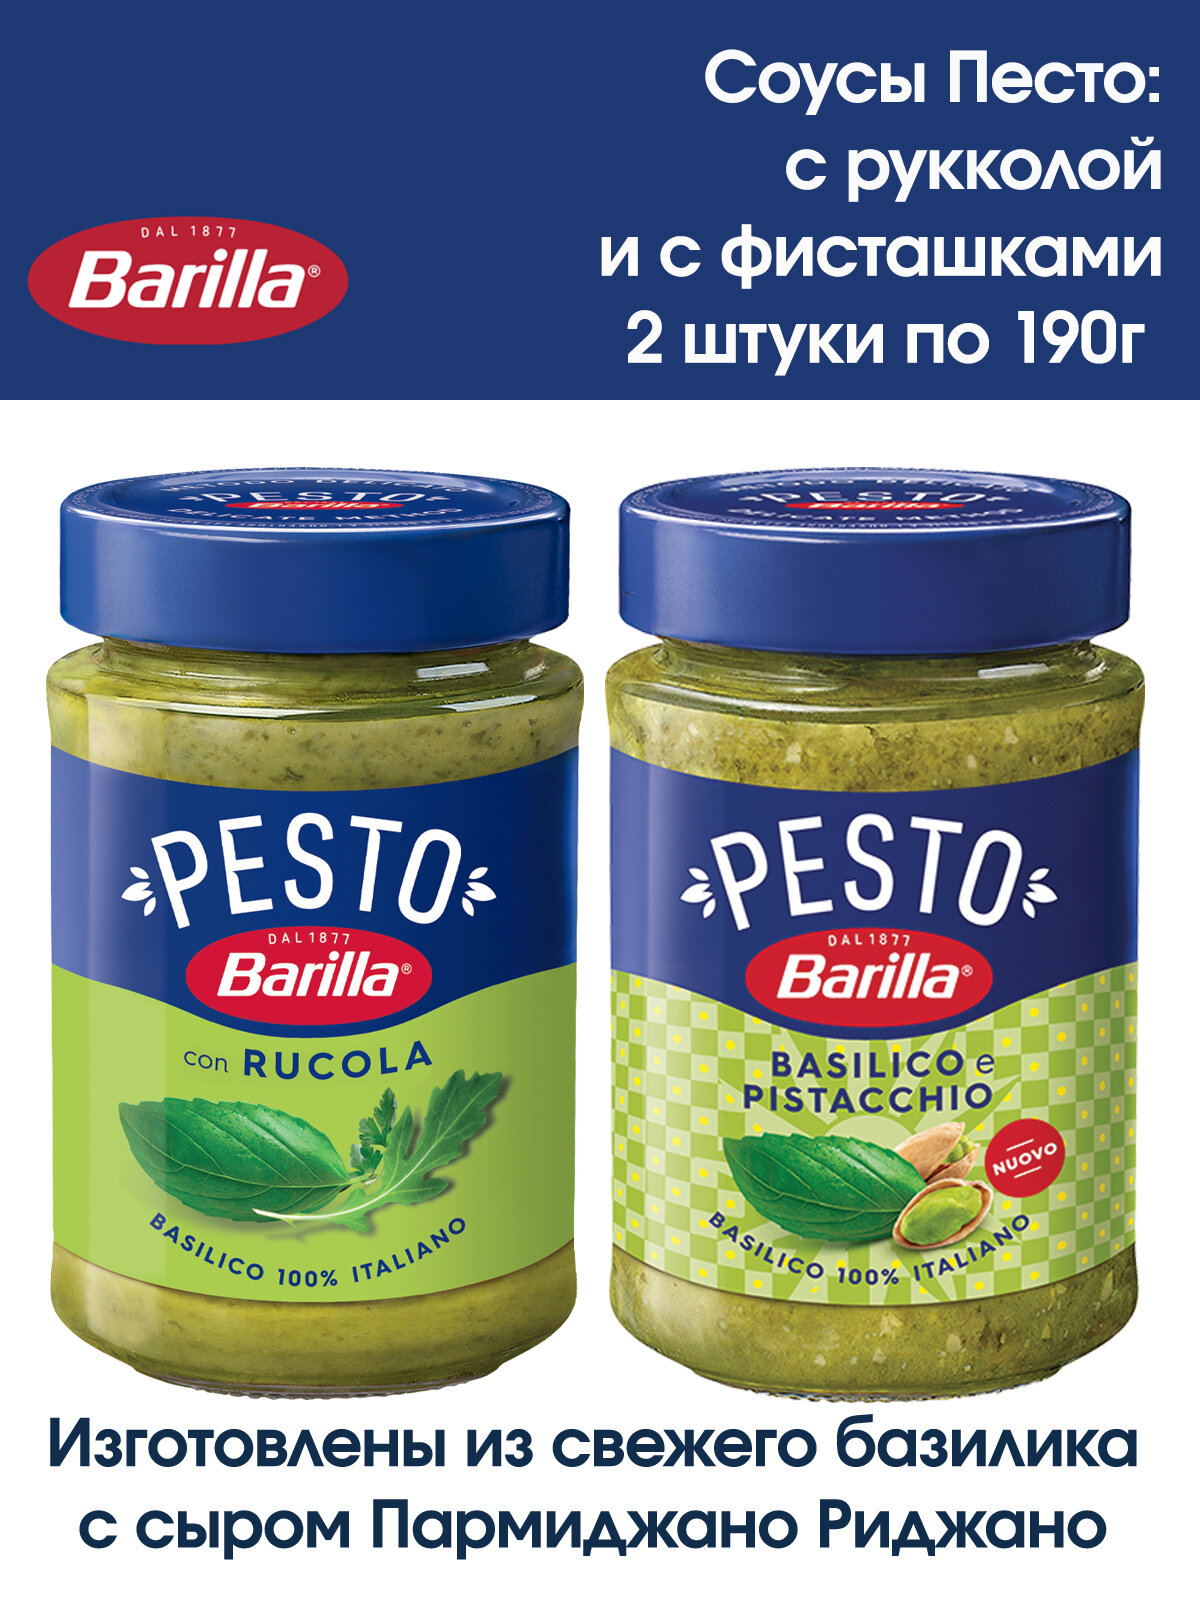 Соус, Песто Barilla "PESTO с базиликом и рукколой" и "PESTO с фисташками", 2 штуки по 190 грамм.